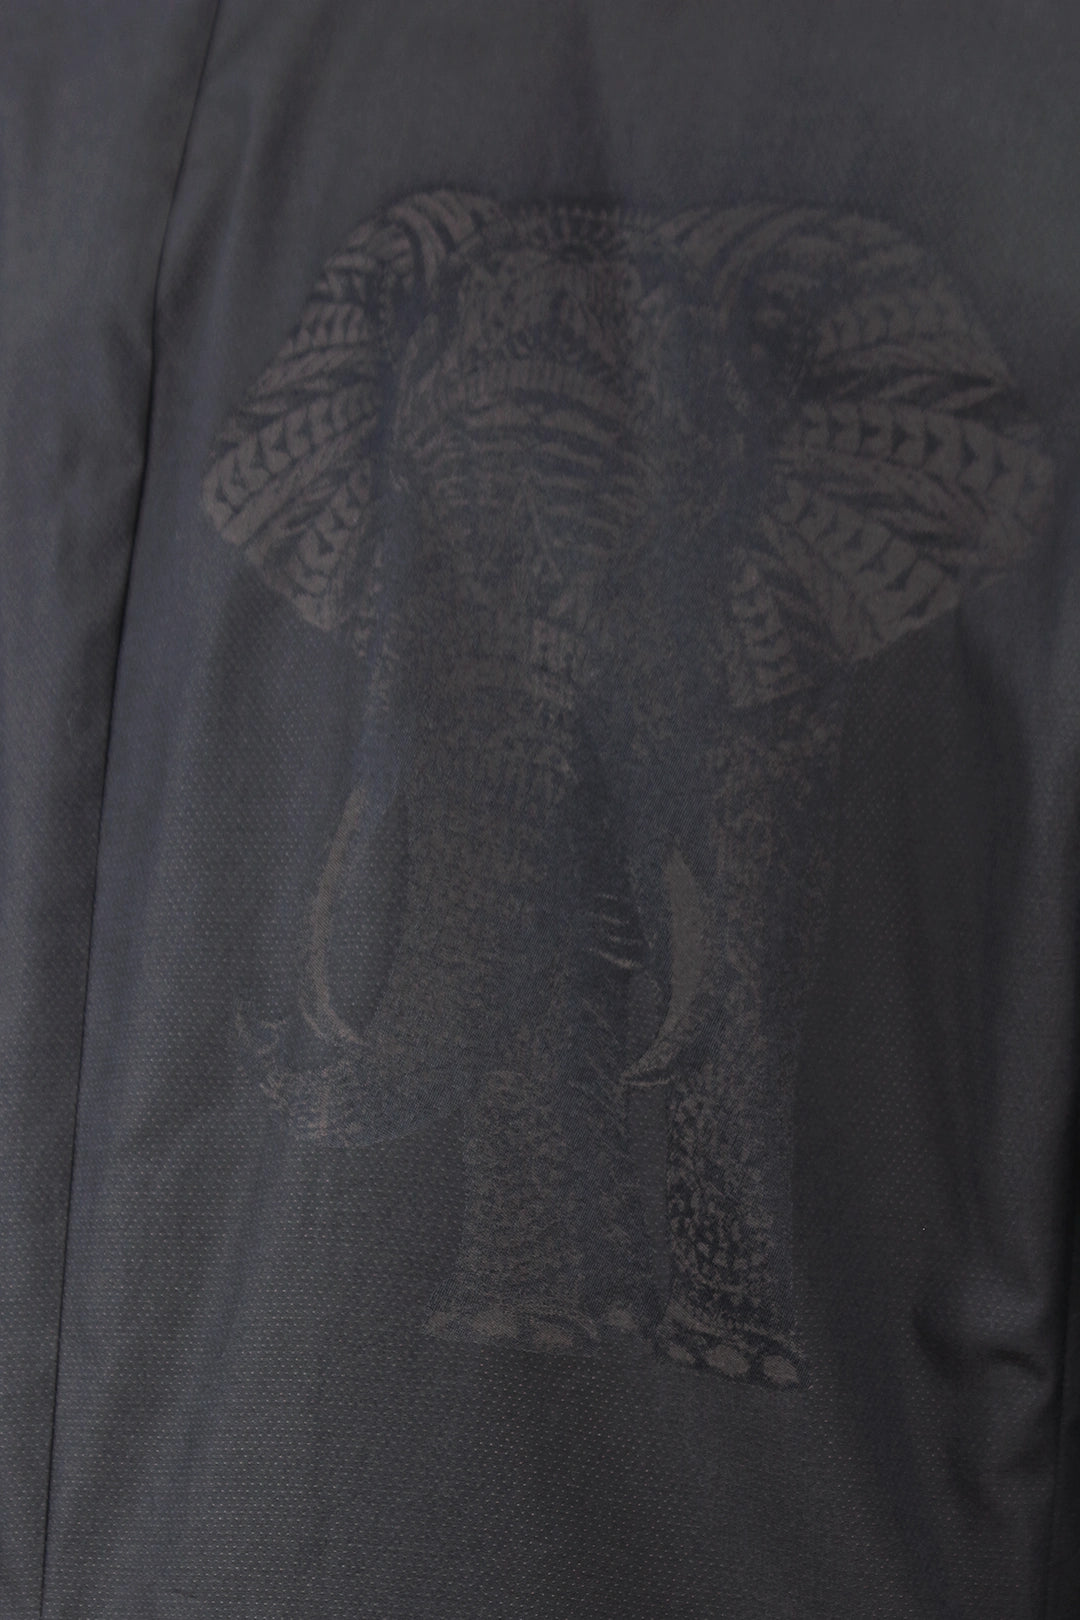 Giacca doppiopetto cotone nero jacquard elephant